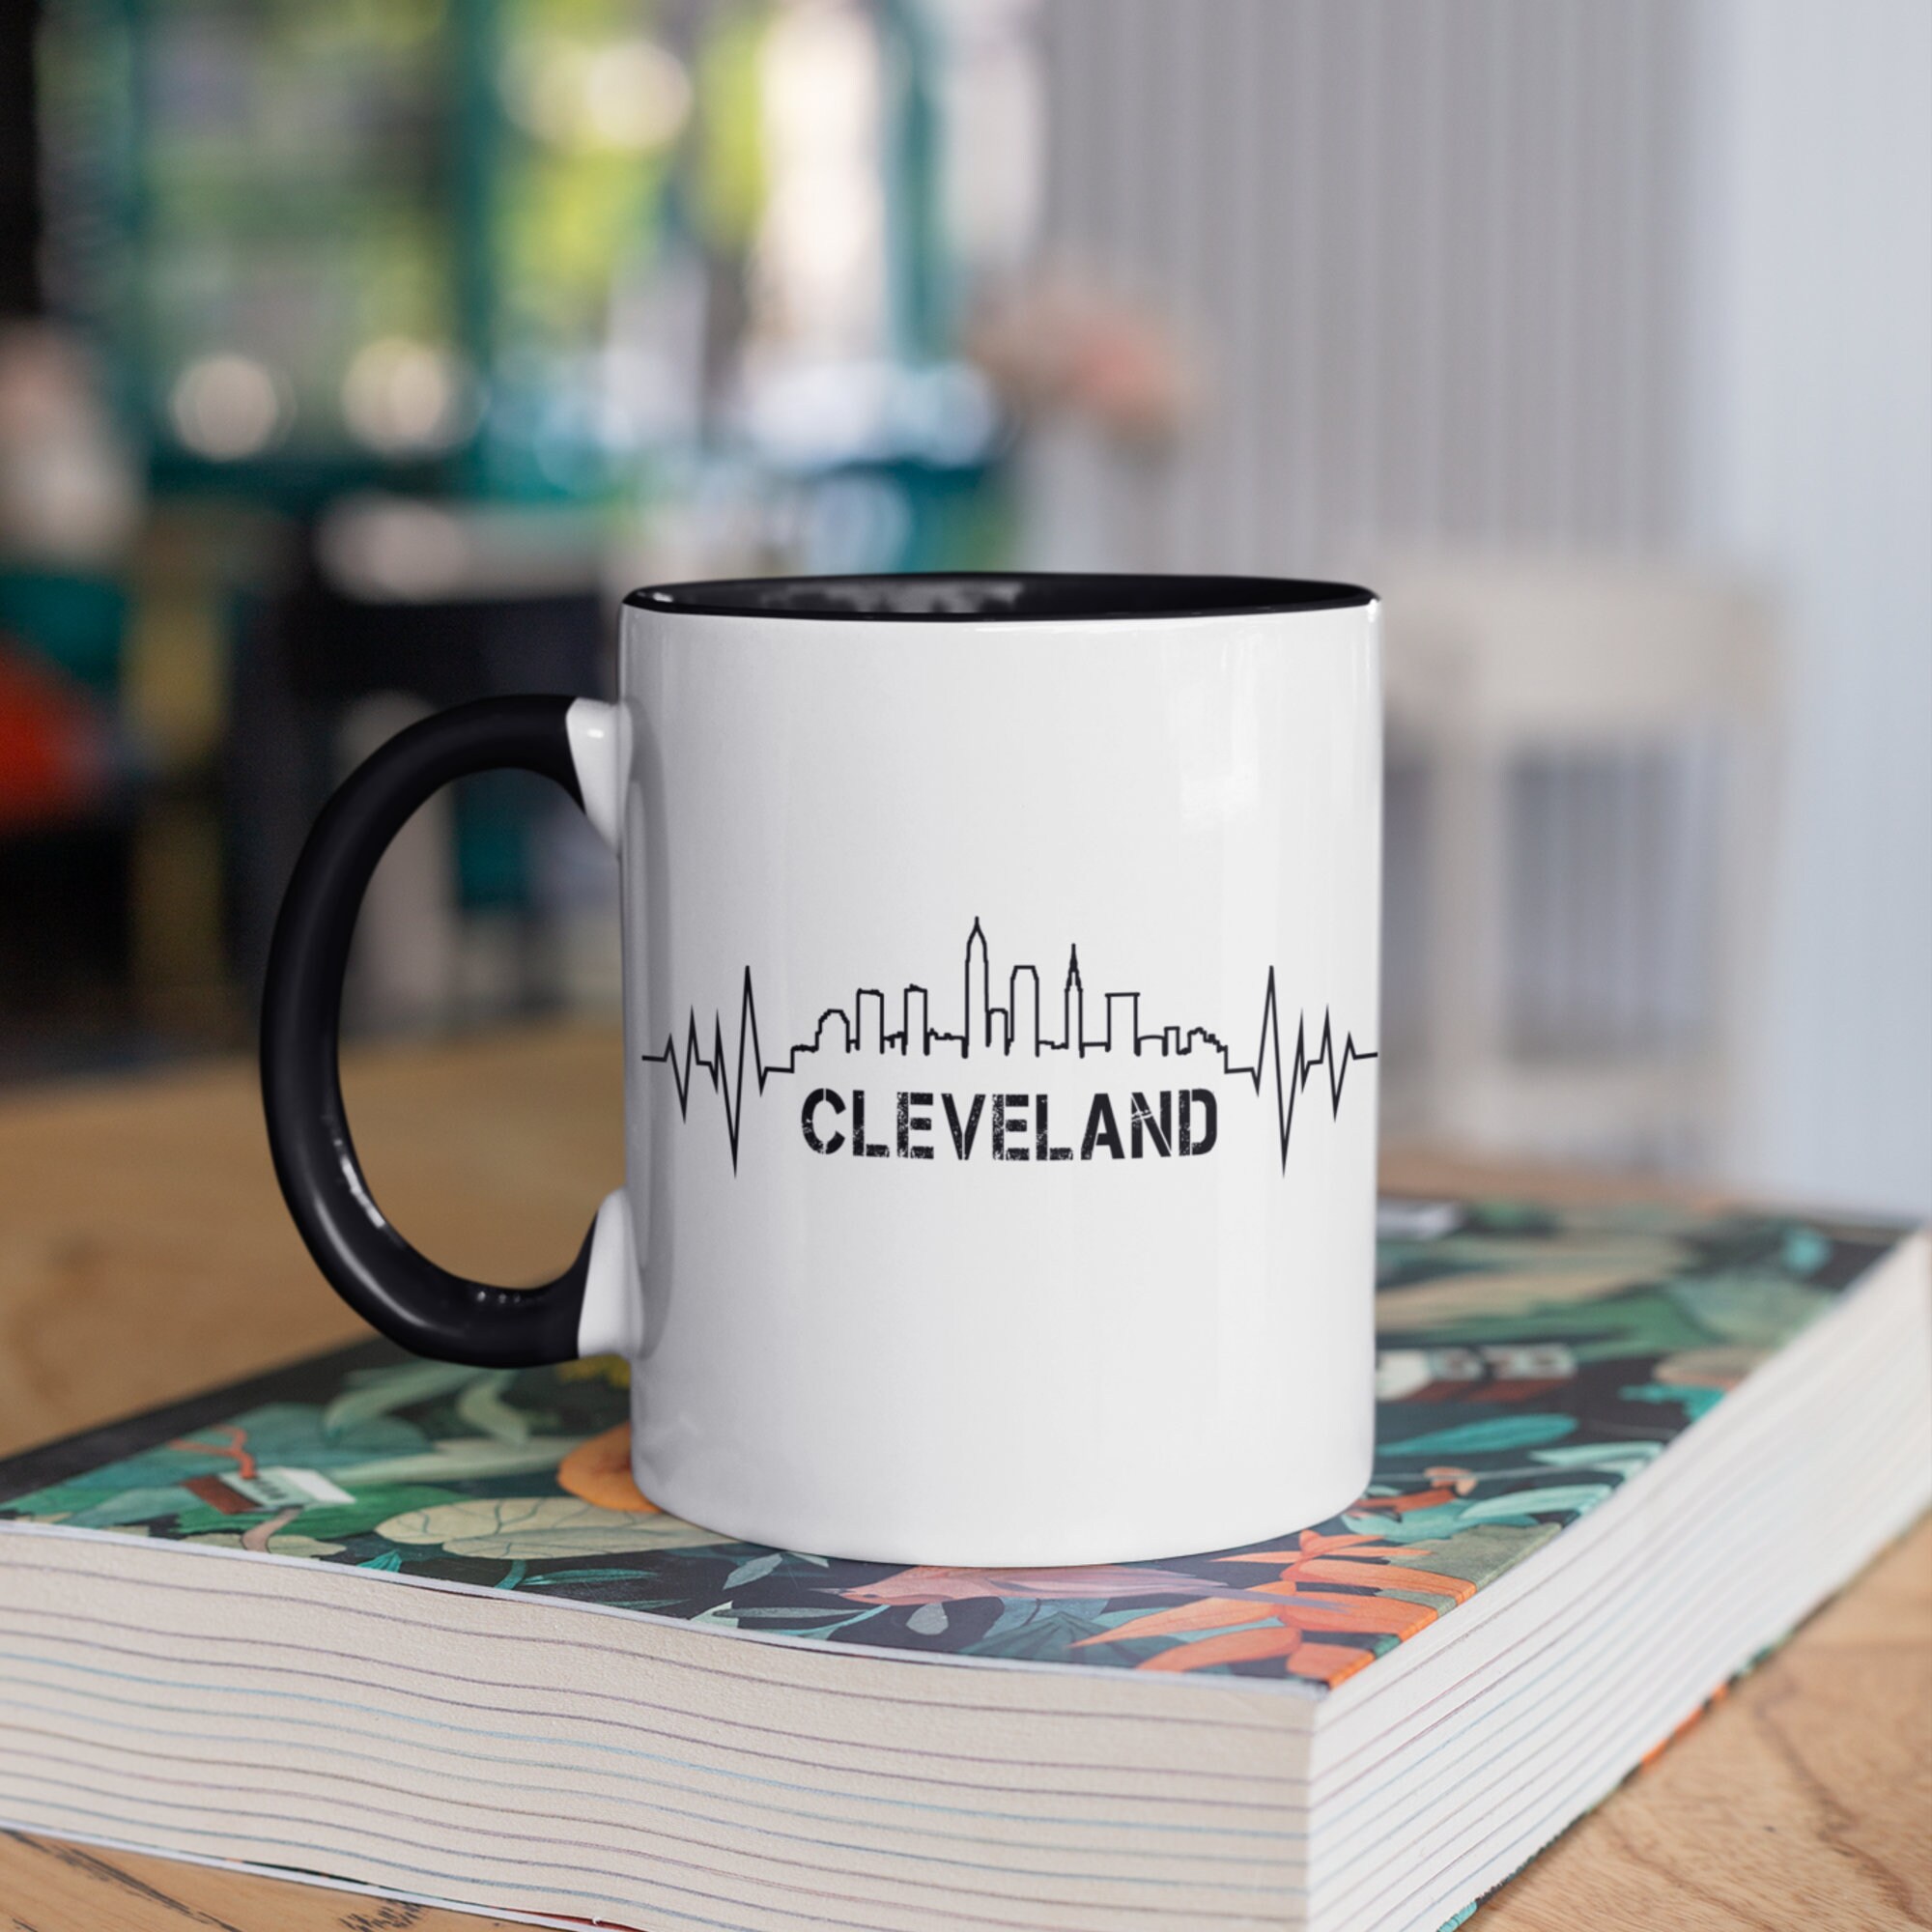 Vintage Cleveland Browns Coffee Mug Grid Background Design Papel Ceramic 12  oz